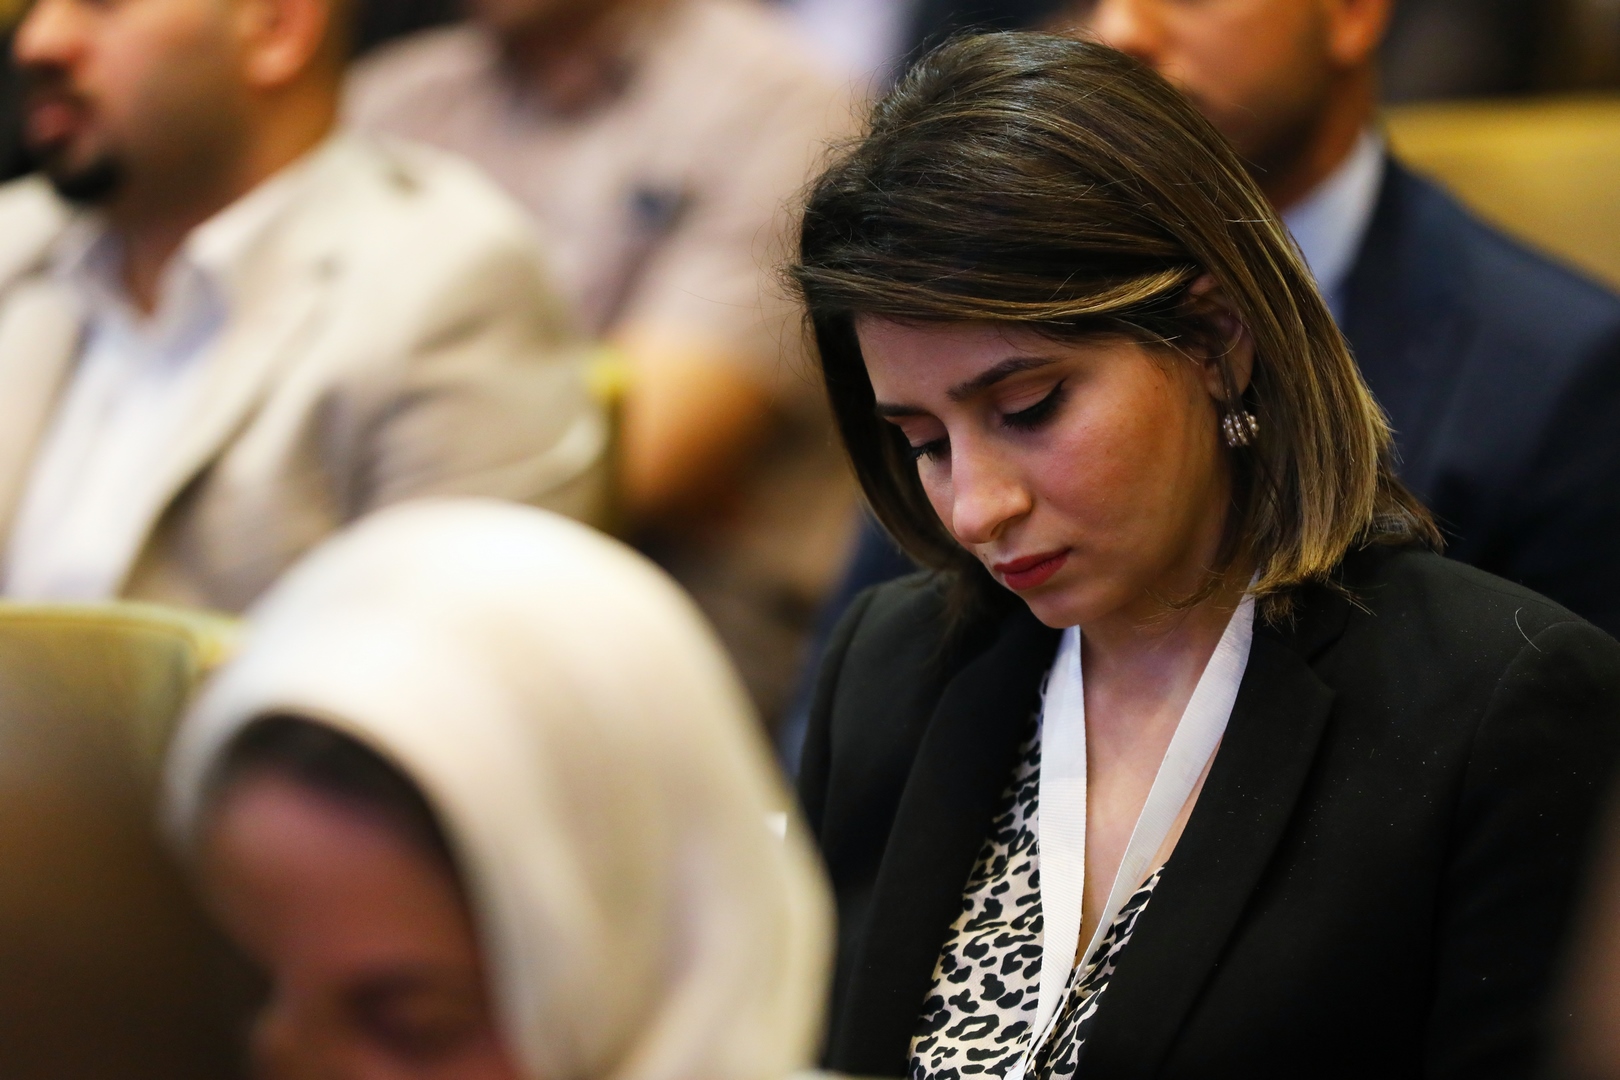 الجلسة التاسعة دور قطاع الاتصالات في تطوير الاقتصاد العراقي 